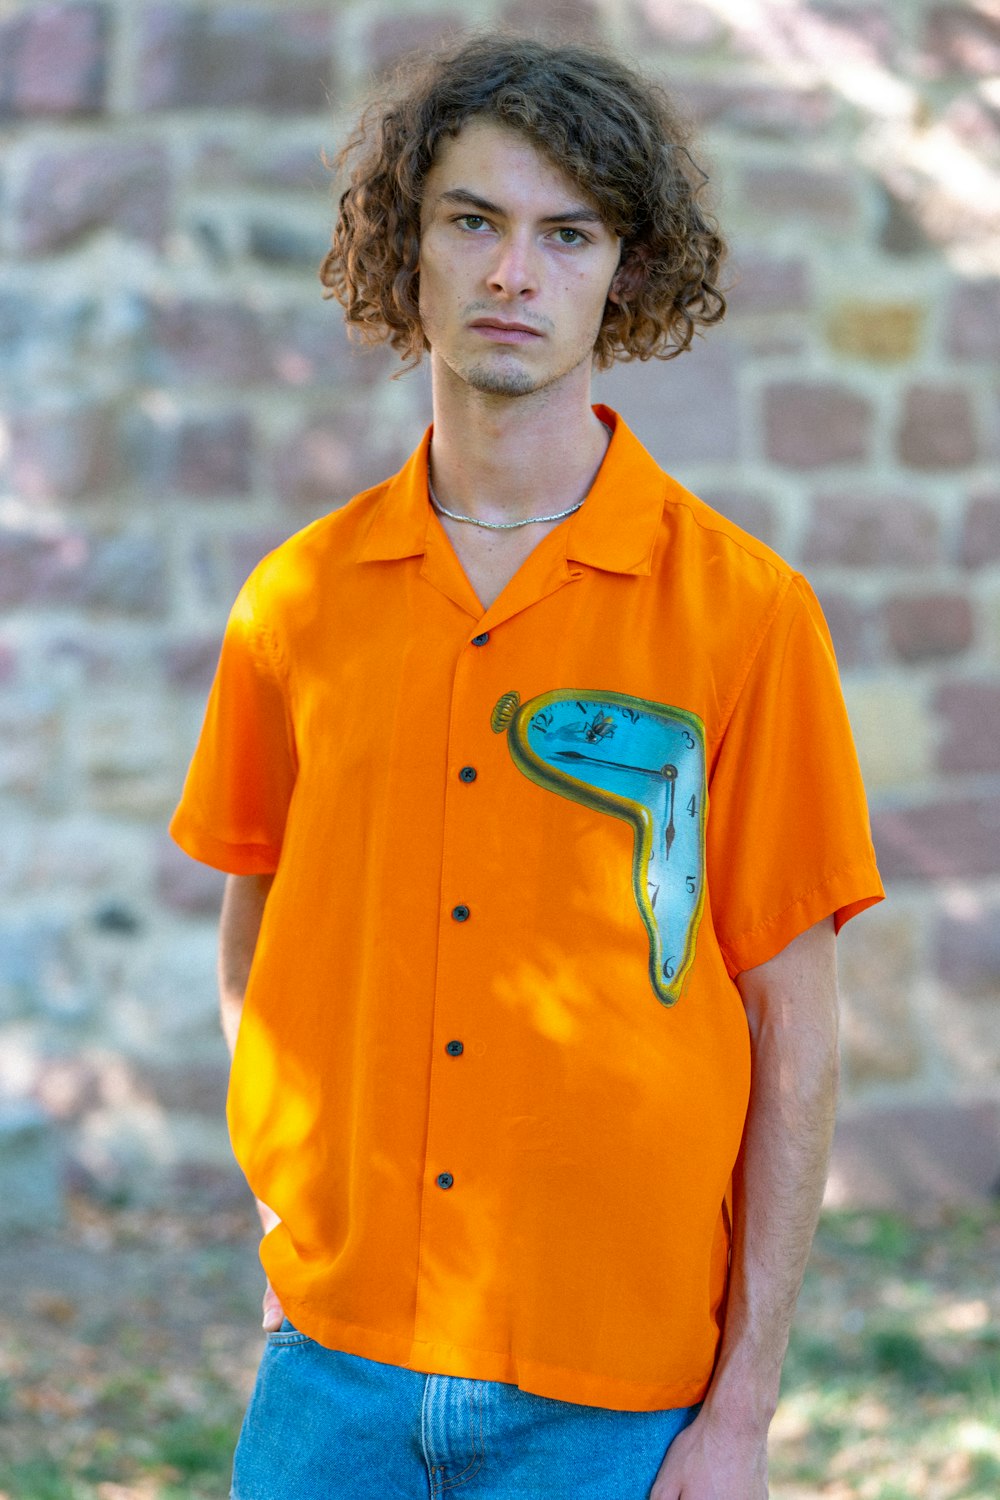 una persona che indossa una camicia arancione